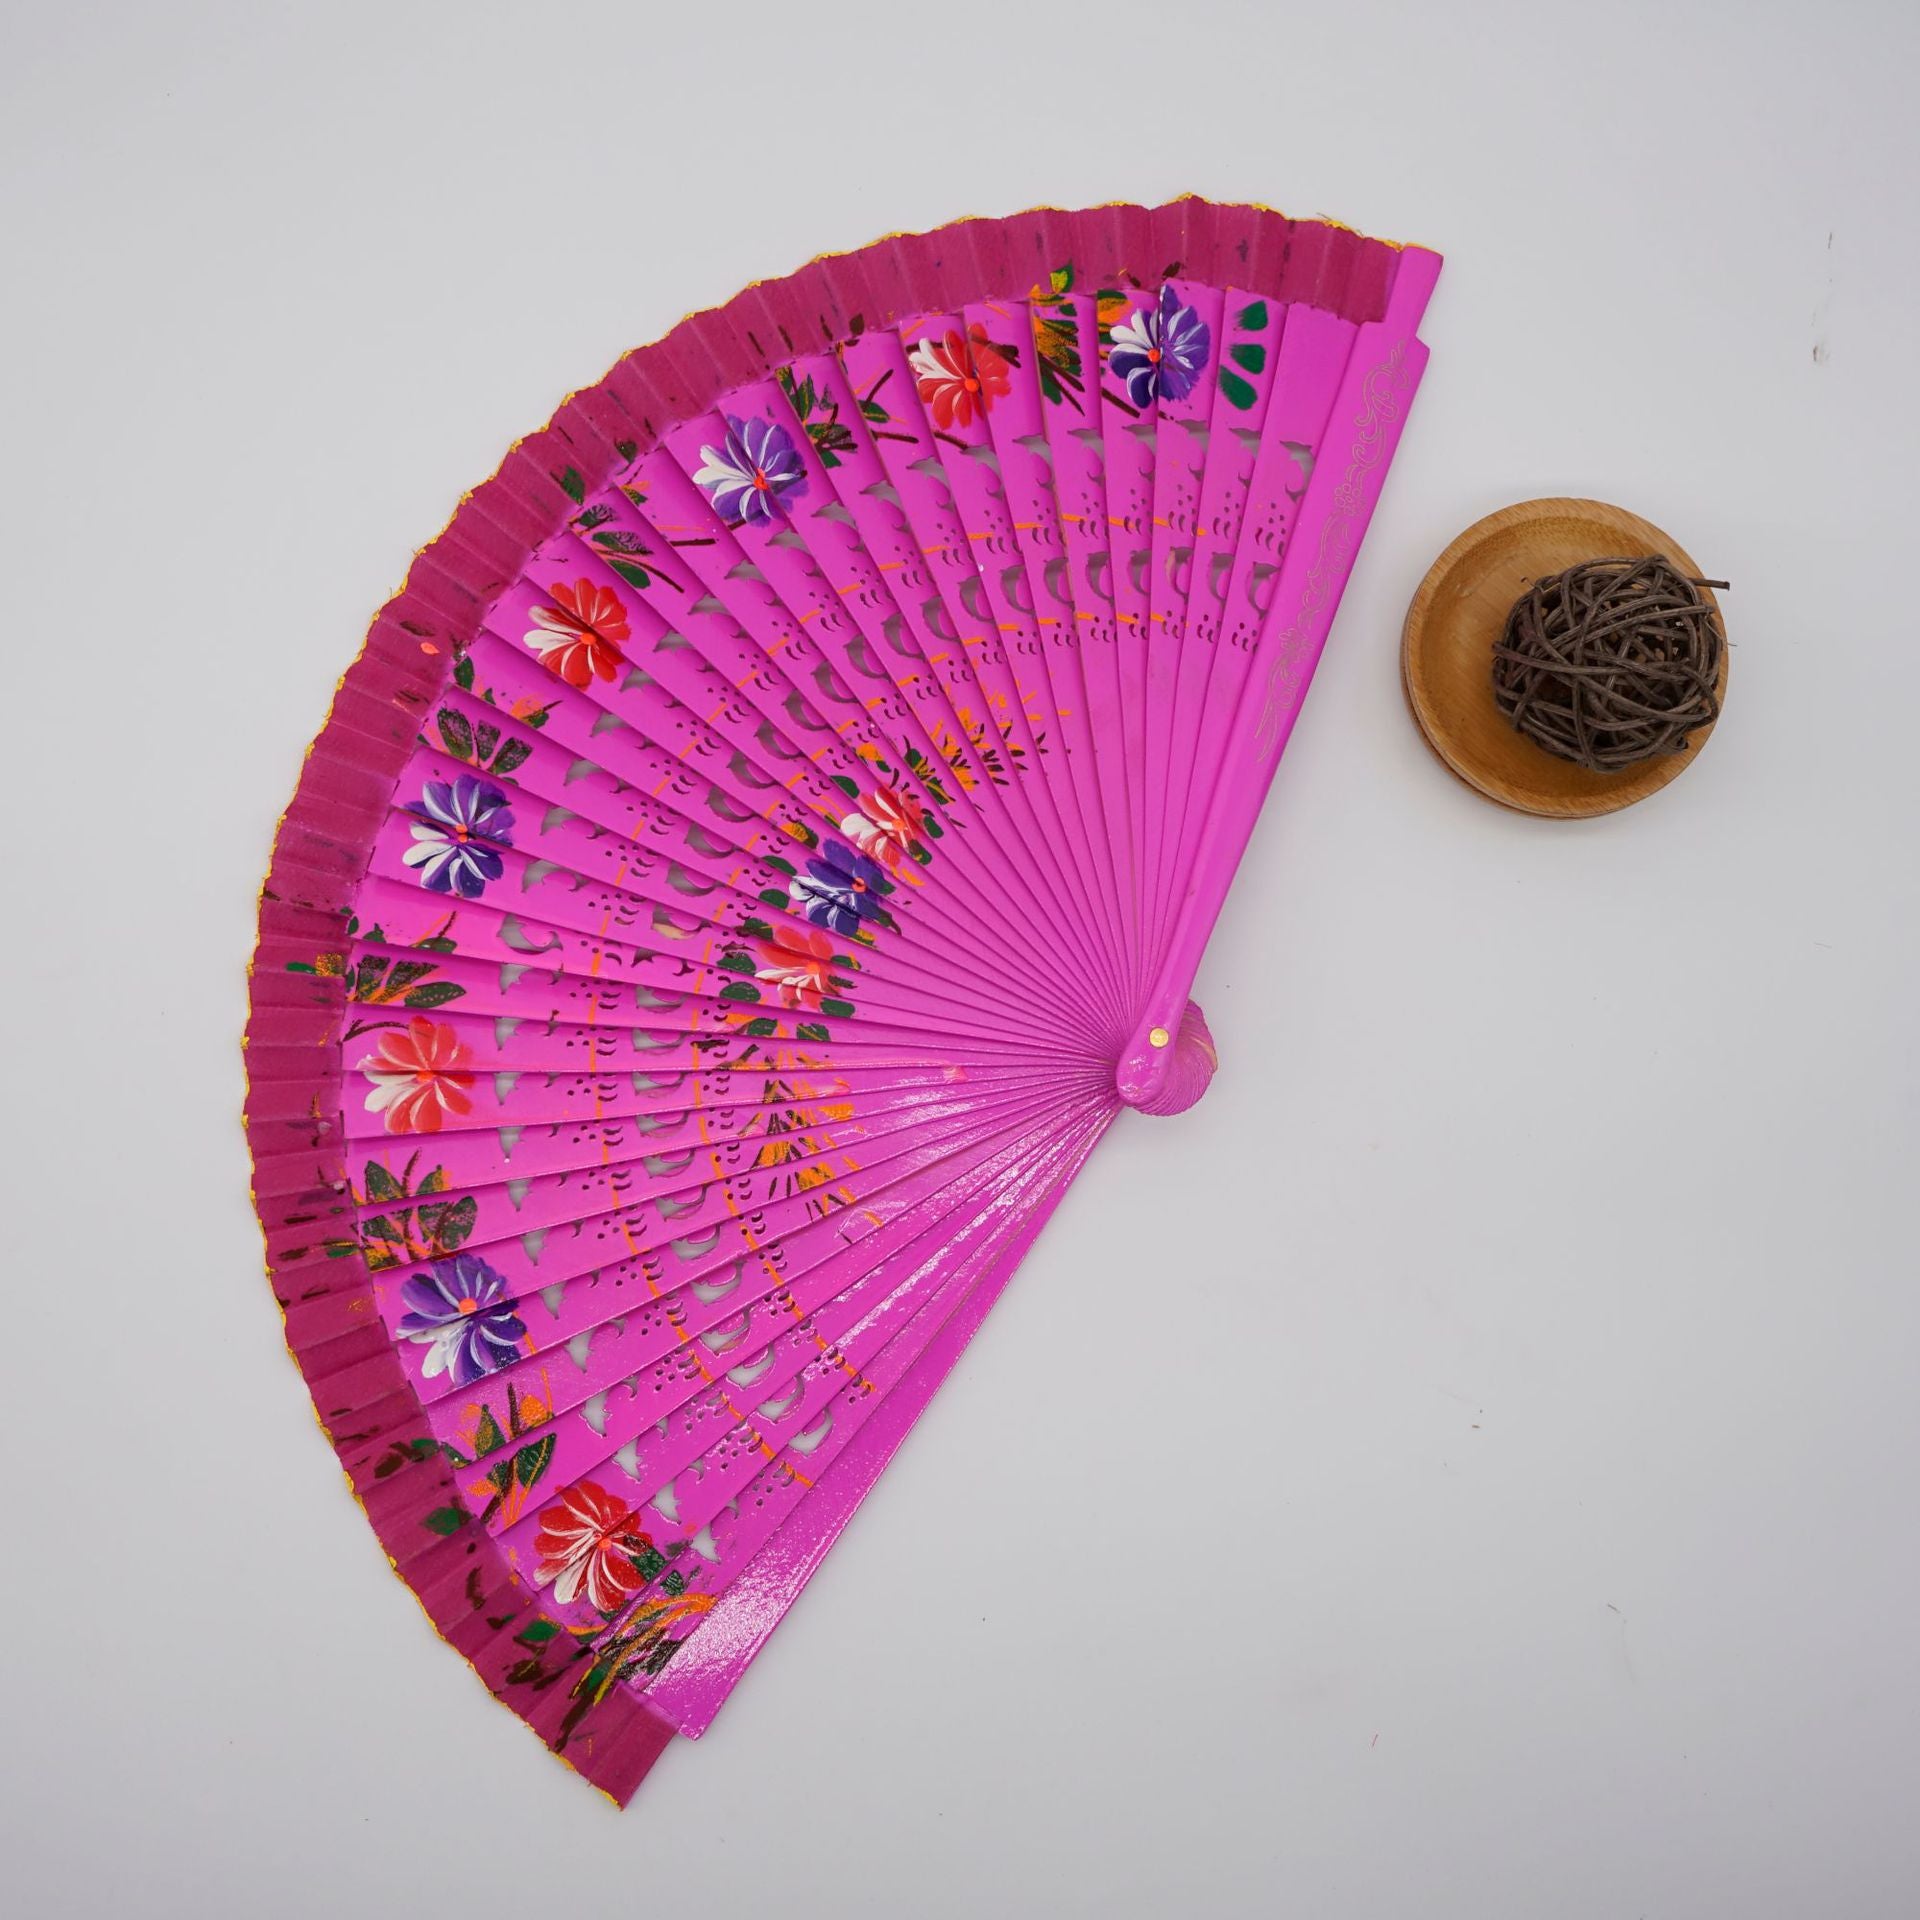 TEEK - Folding Fan Wood Spanish Style Fan FAN theteekdotcom rosepink  